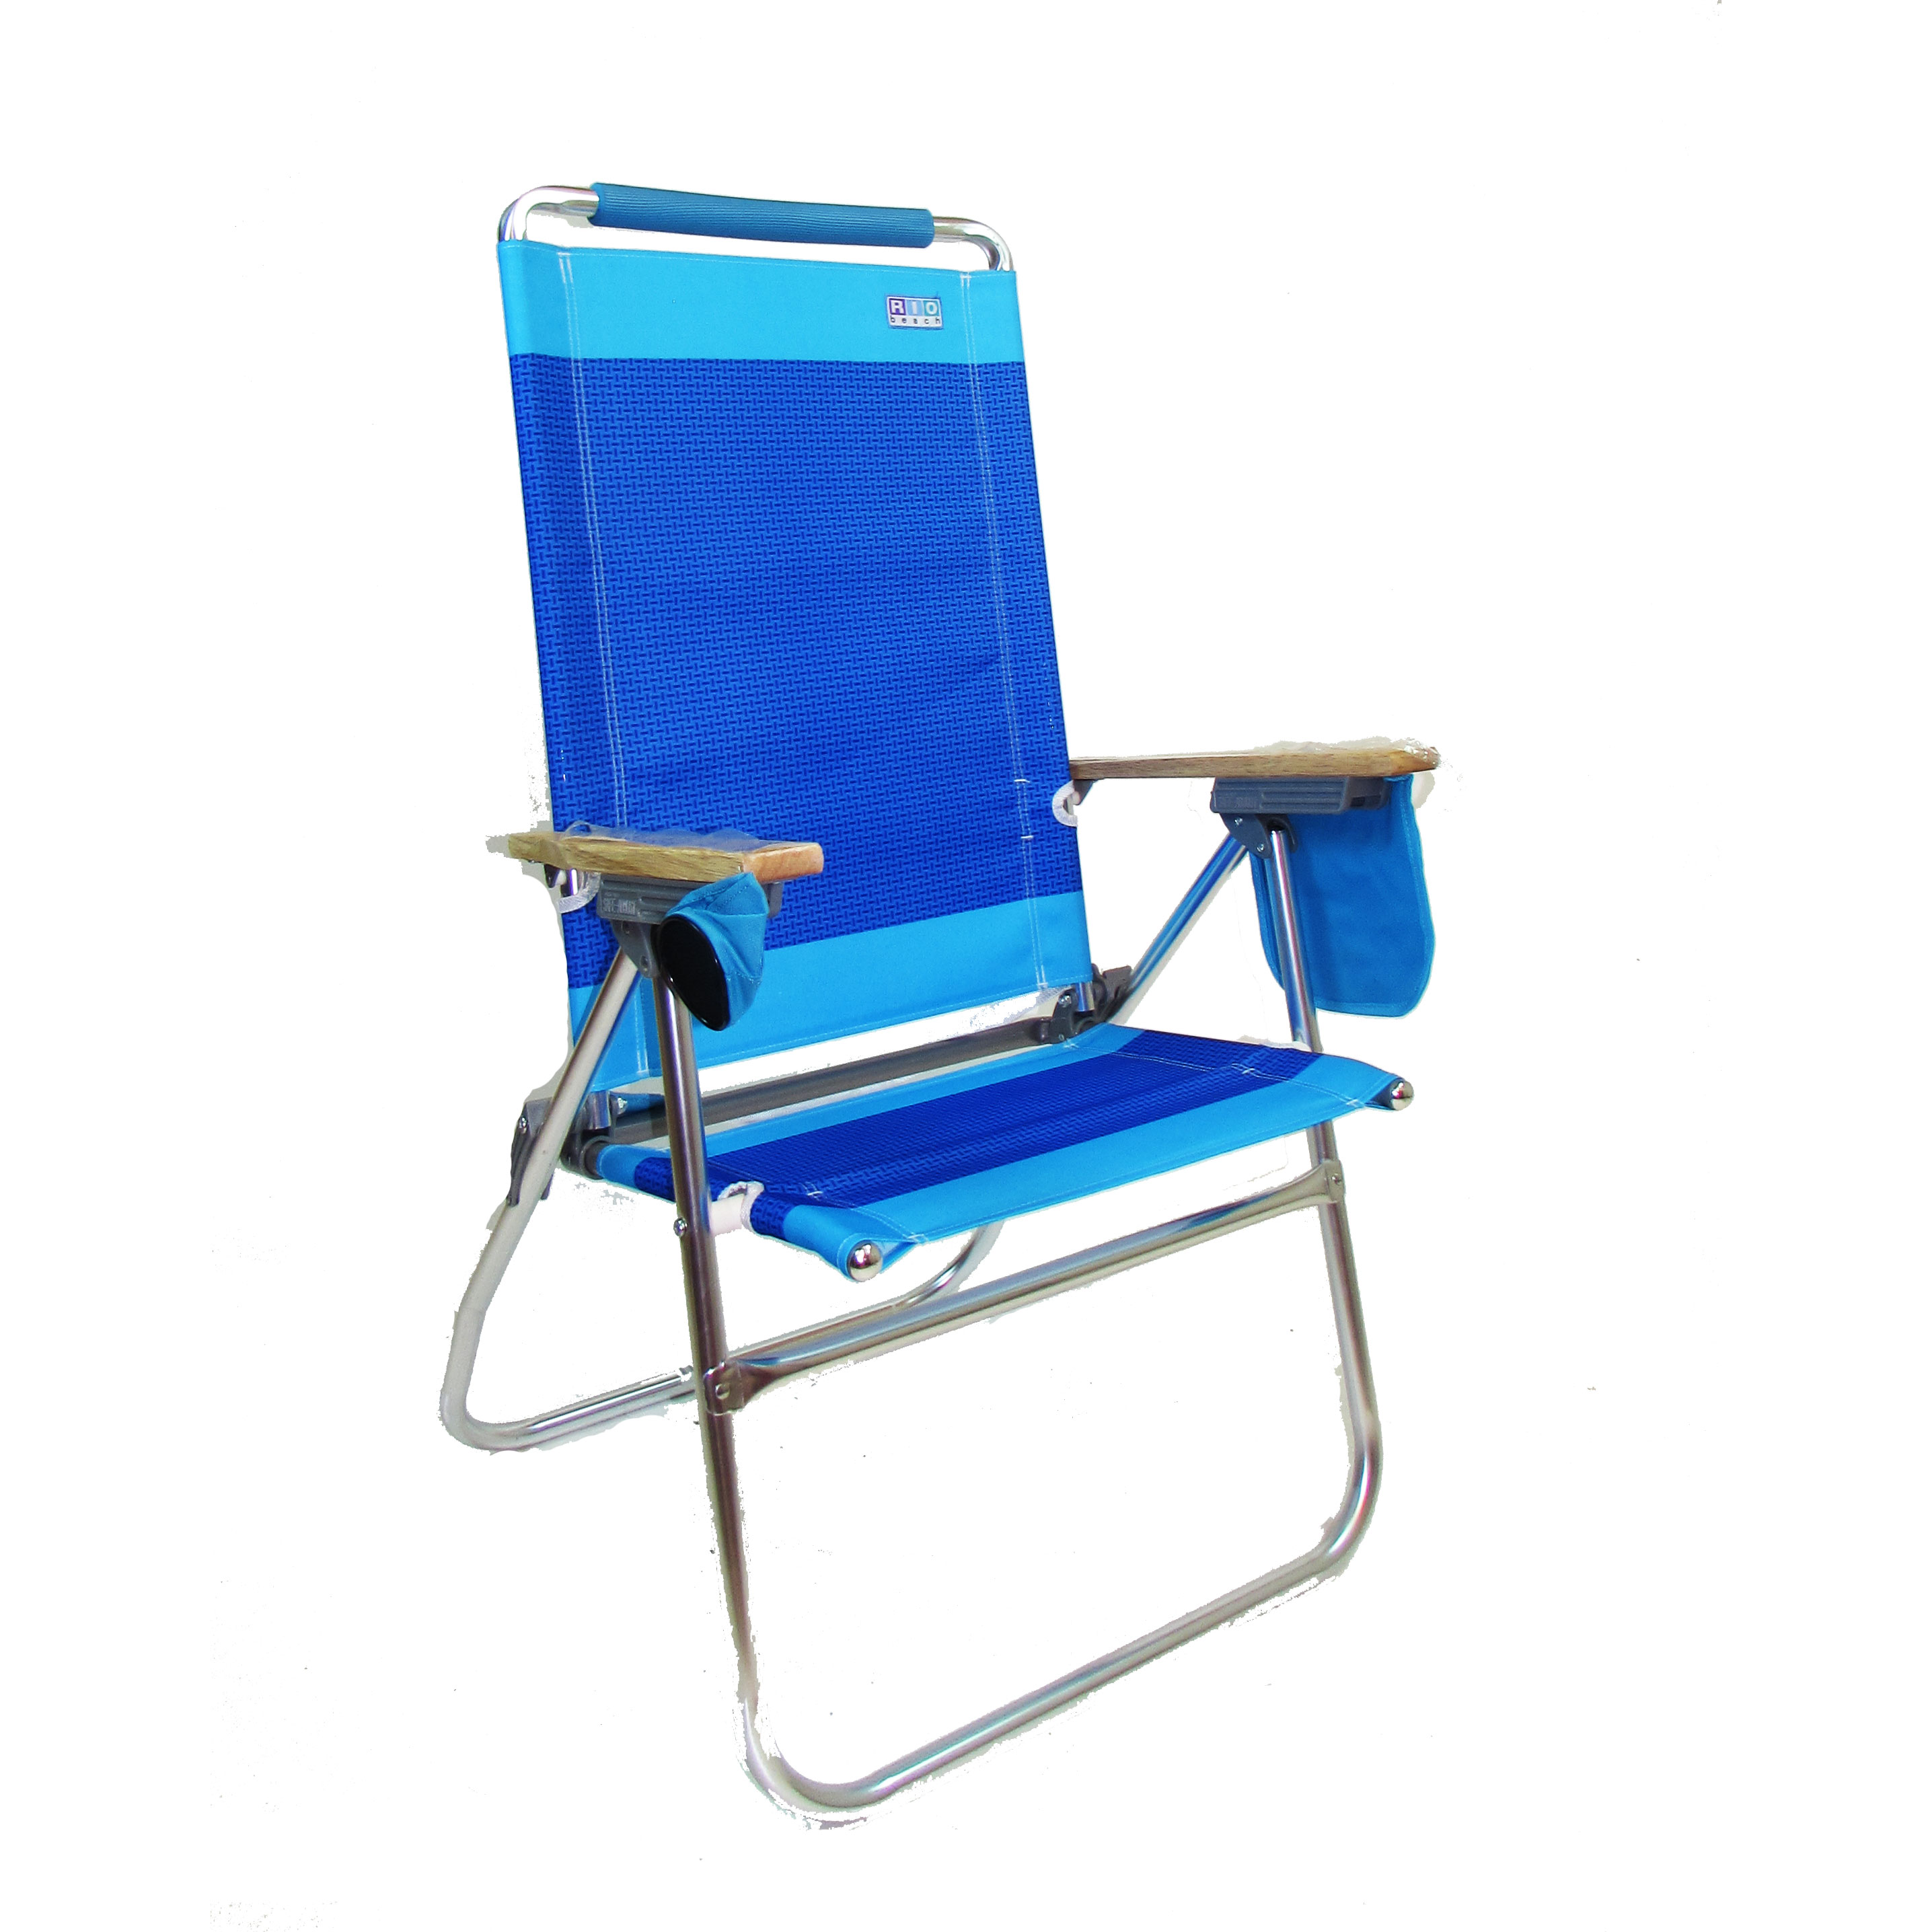 IMPRINTED Hi Boy Beach Chair by Rio Beach - Custom Chair Designer ...